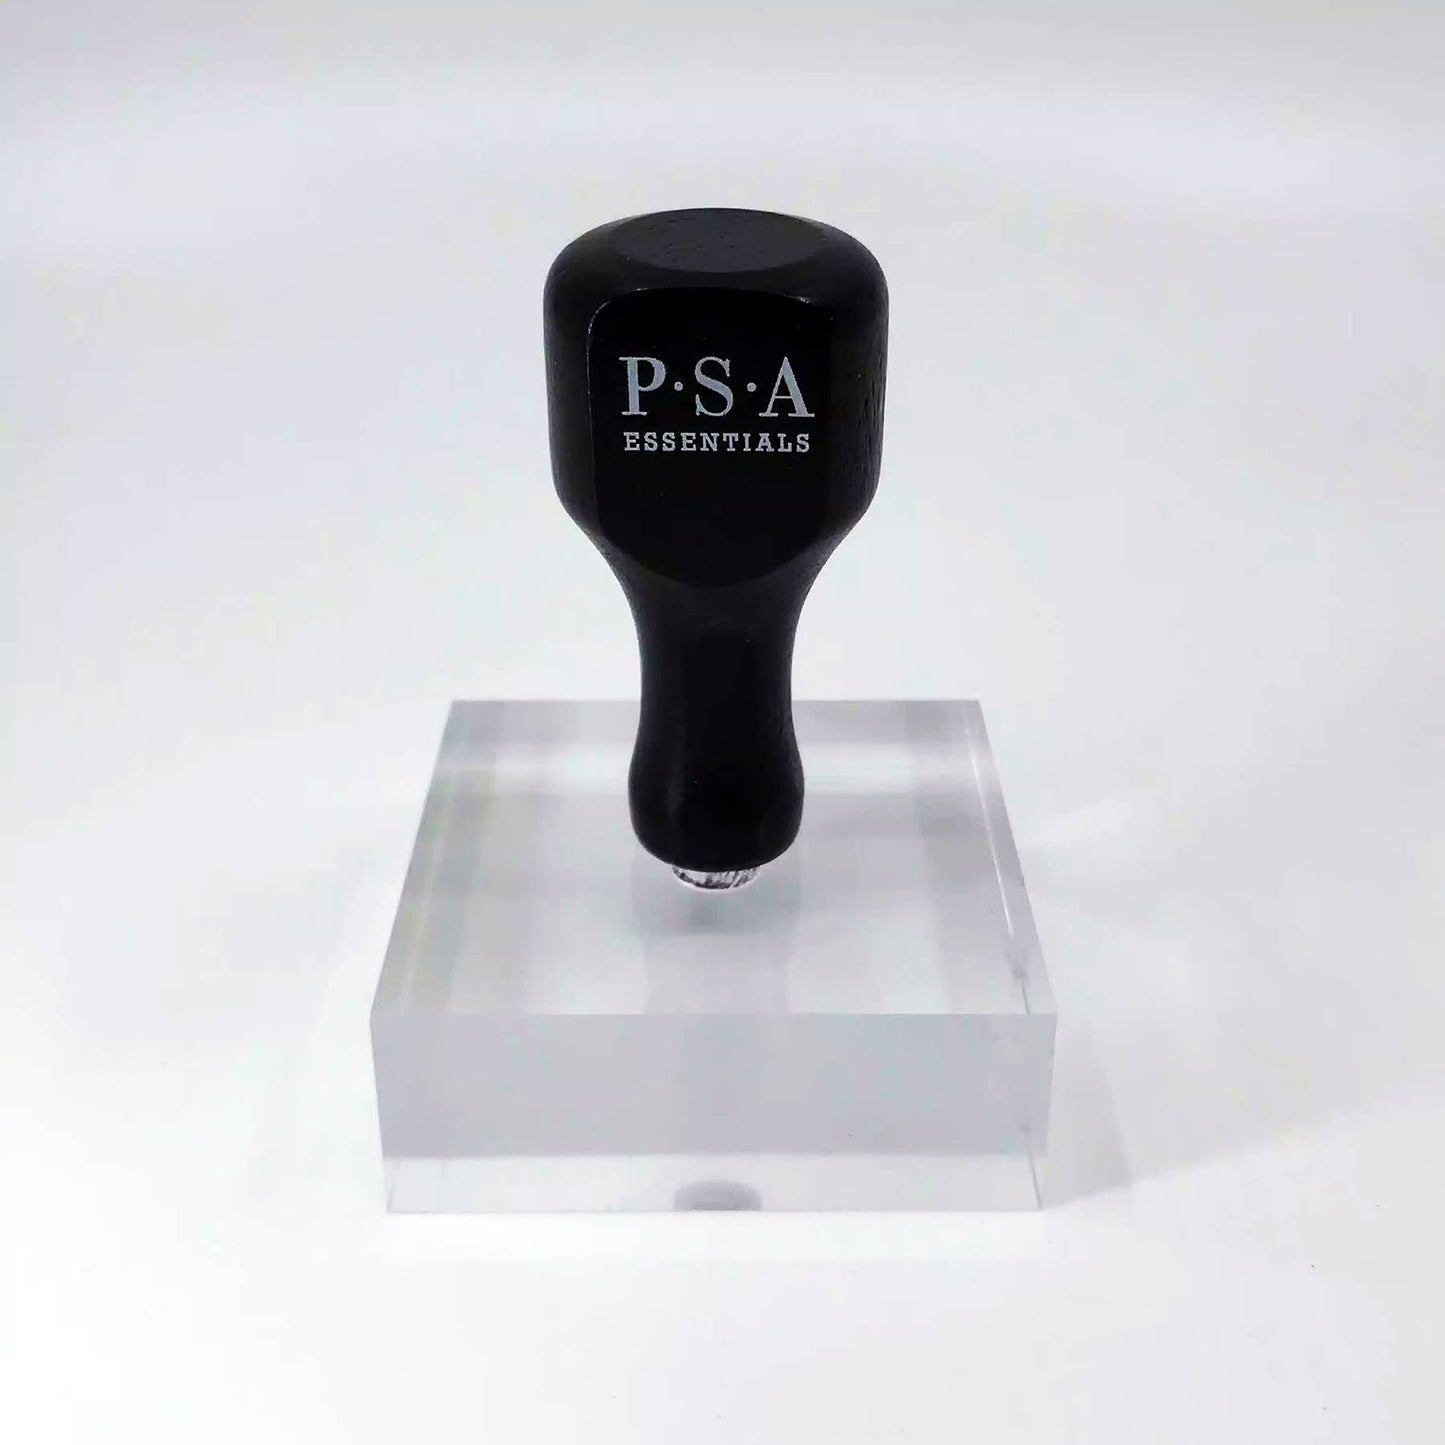 PSA Essentials - Hand Stamp